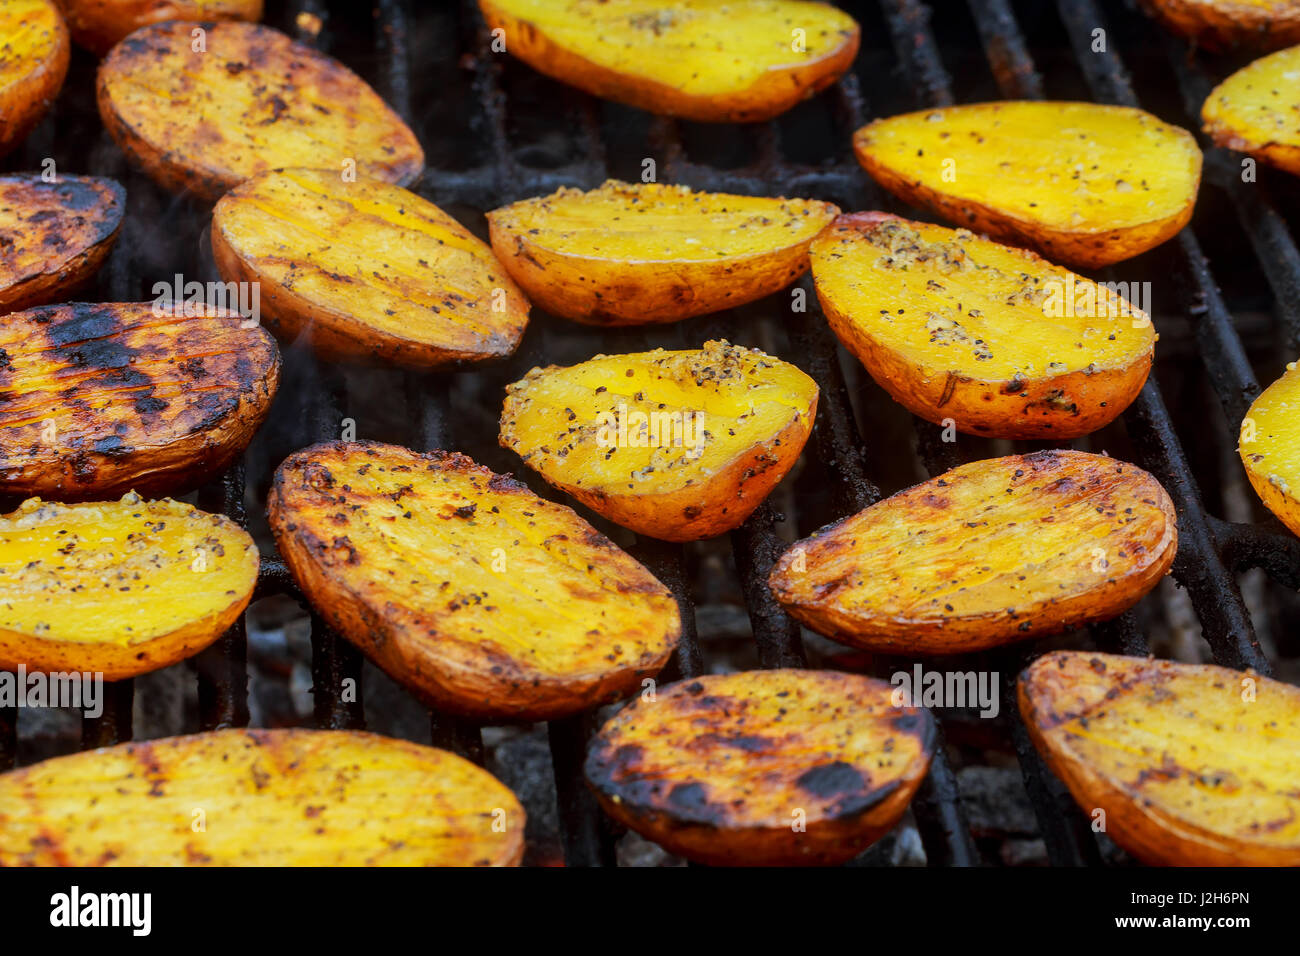 Délicieux sur des pommes de terre de cuisson barbecue. Tranche les pommes de terre sont préparés sur le grill sur la journée ensoleillée. Close up. Concept culinaire. Banque D'Images